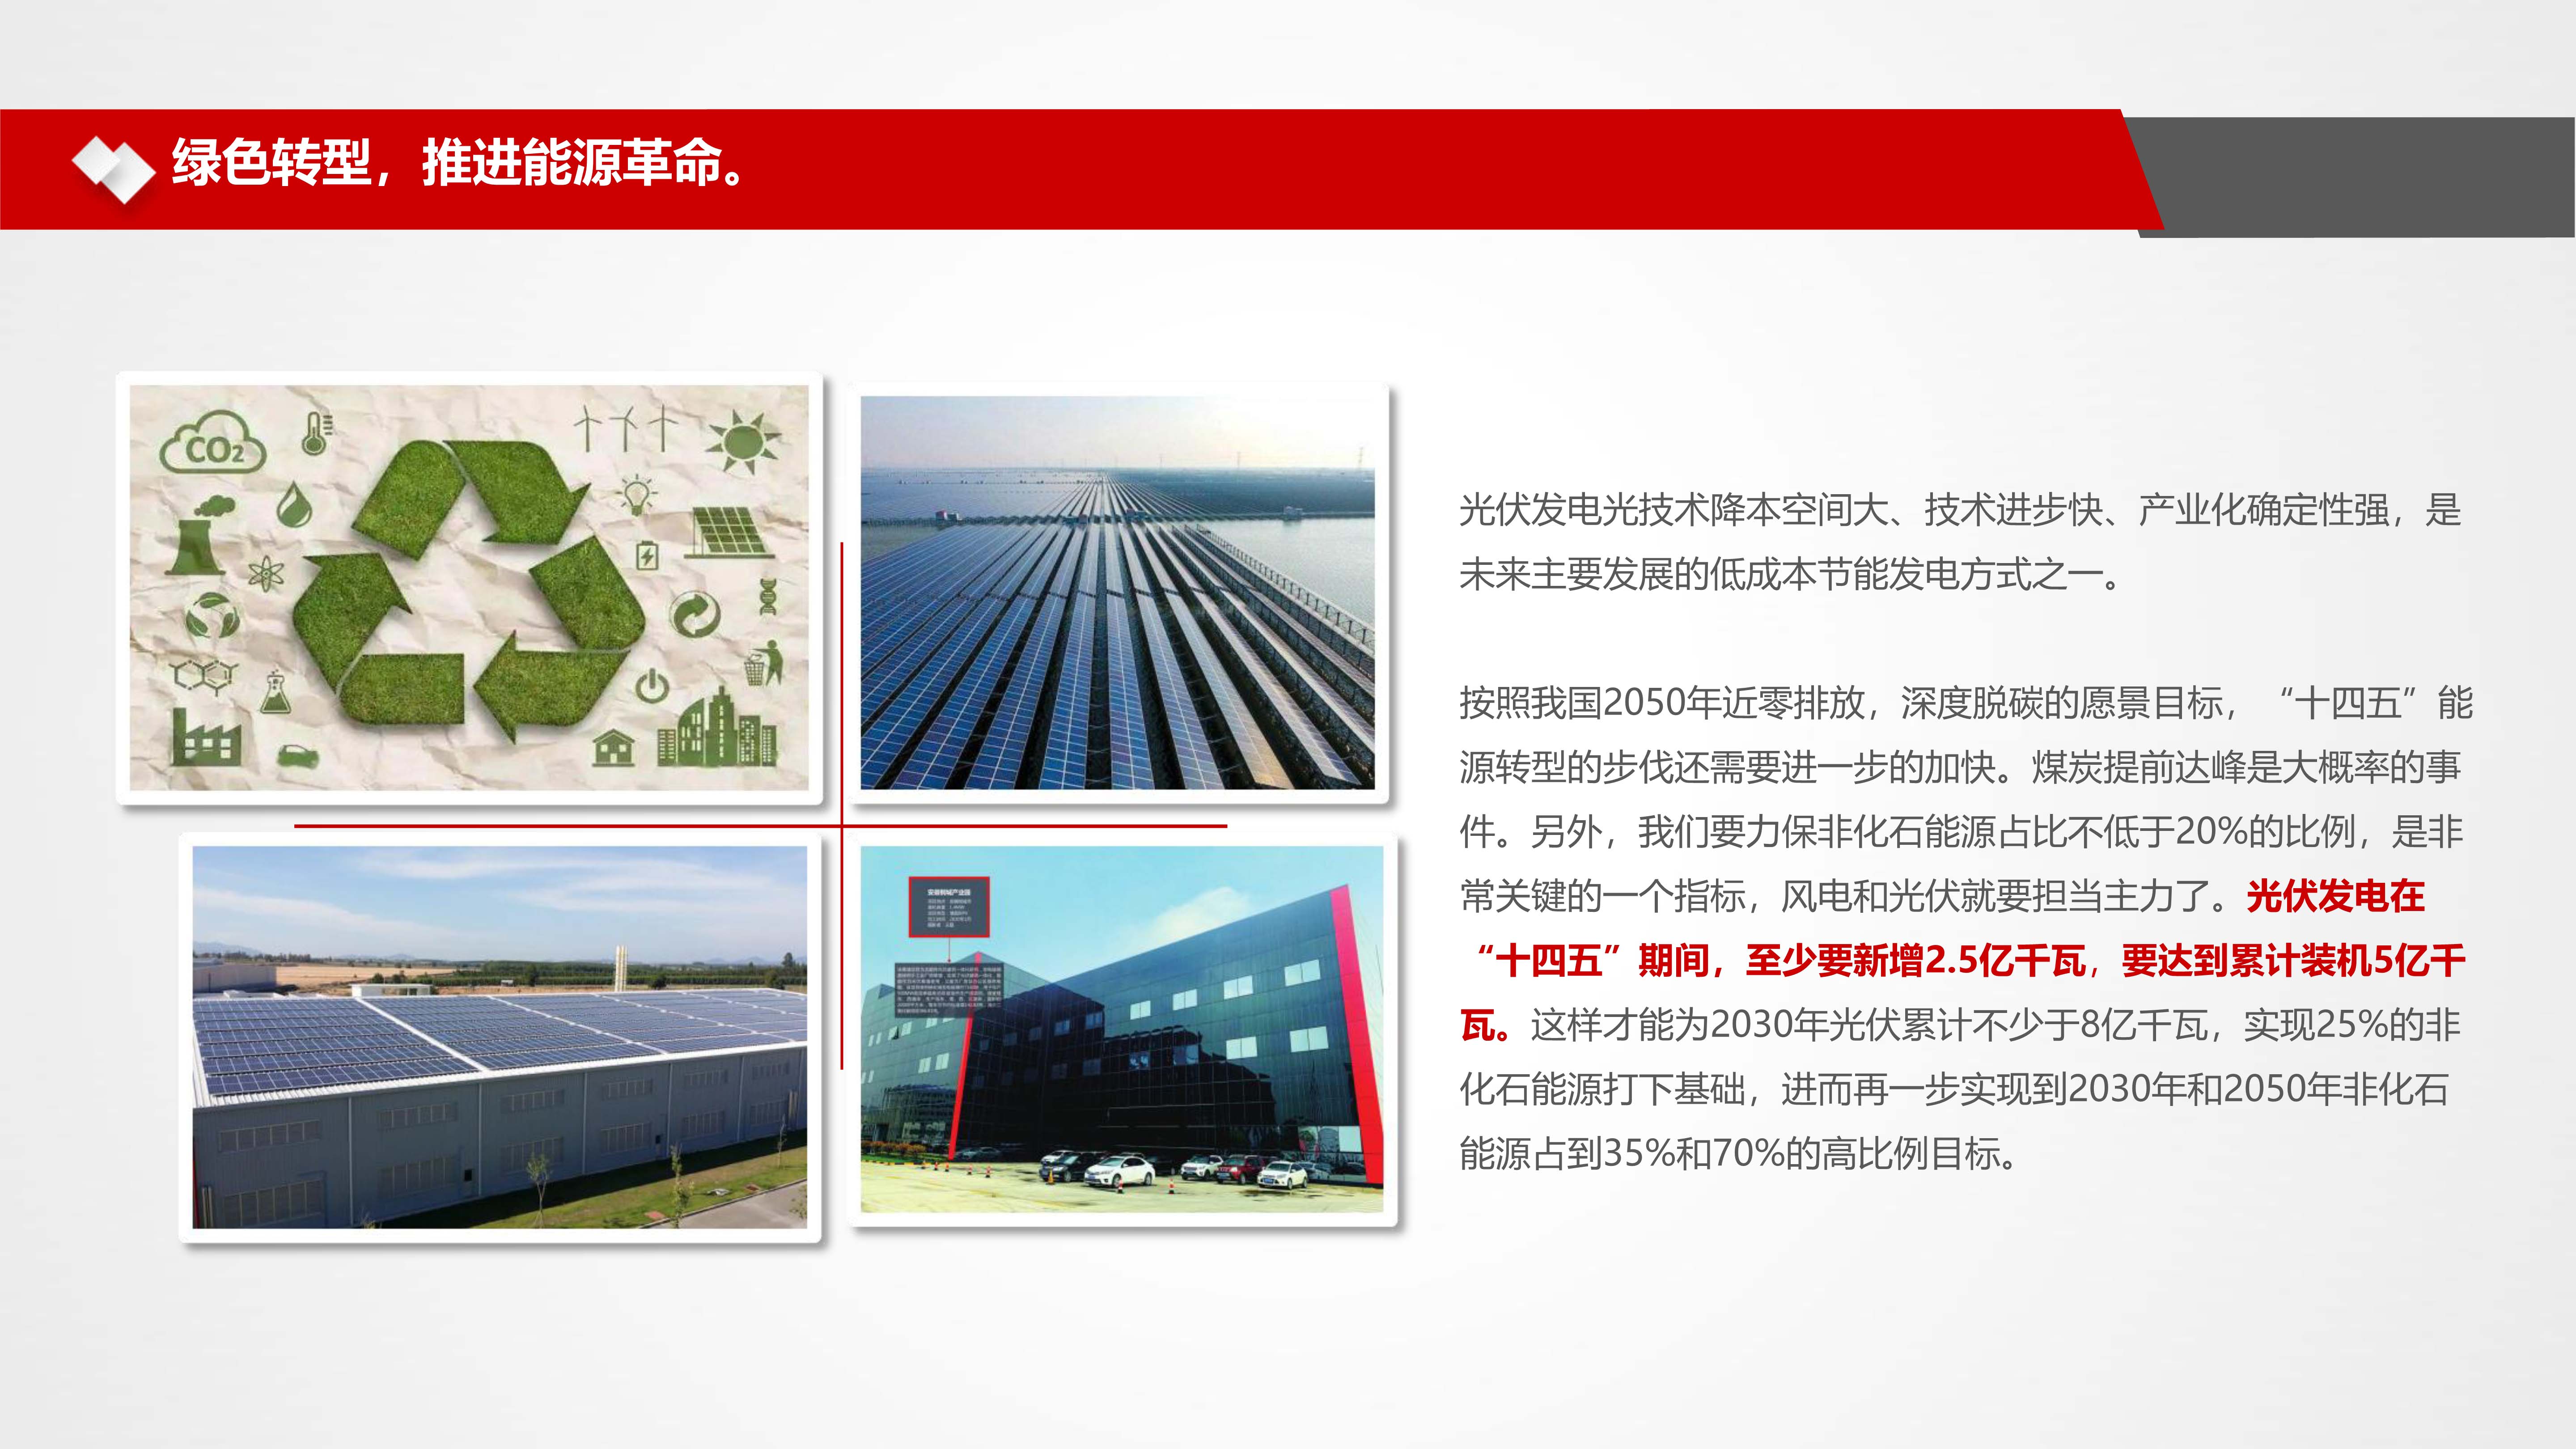 大有国联控股有限公司办公楼外立面改造建筑光电一体化项目_19